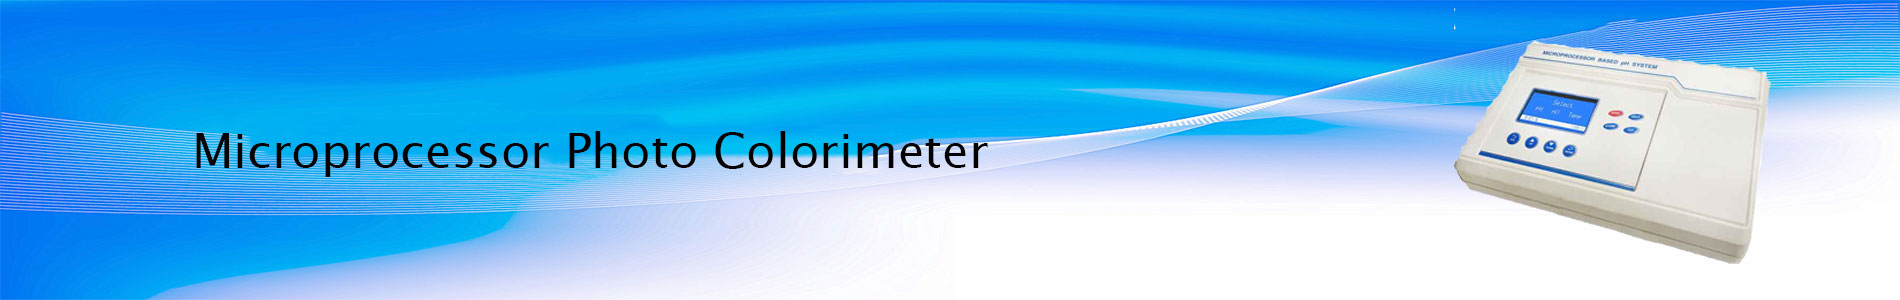 Microprocessor Photo Colorimeter